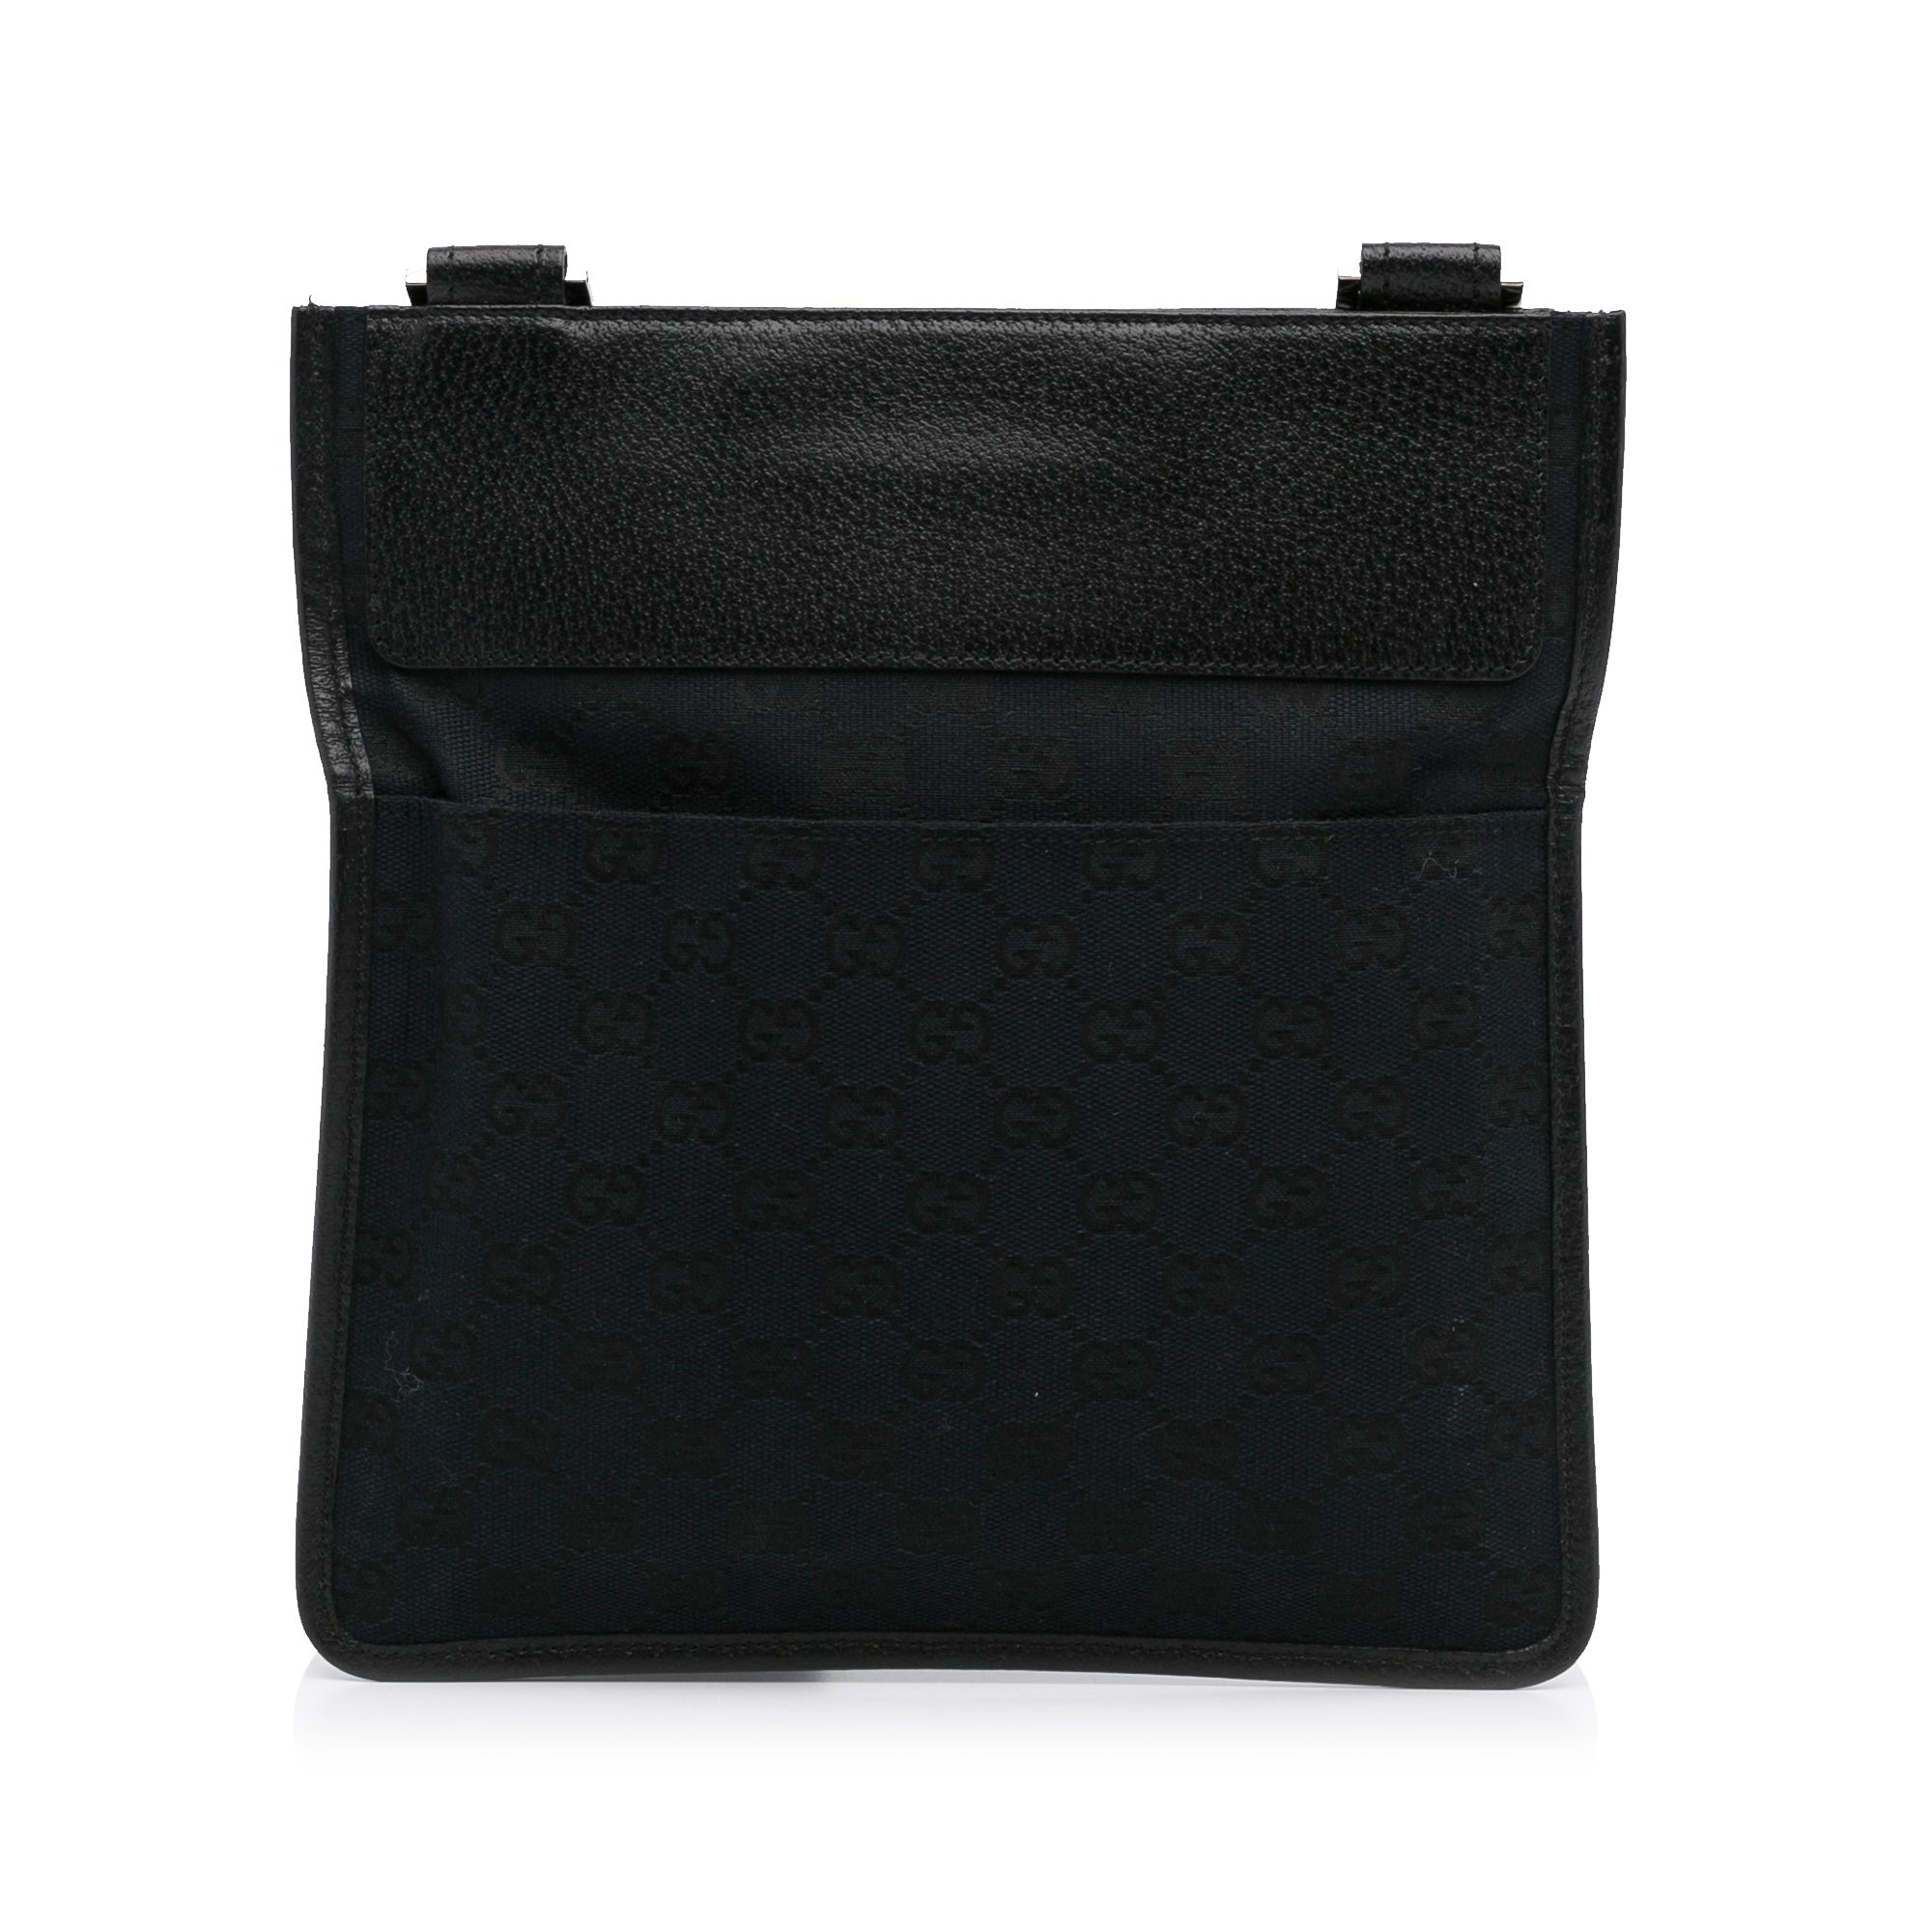 Gucci Shoulder Bag Black,Leather | eBay